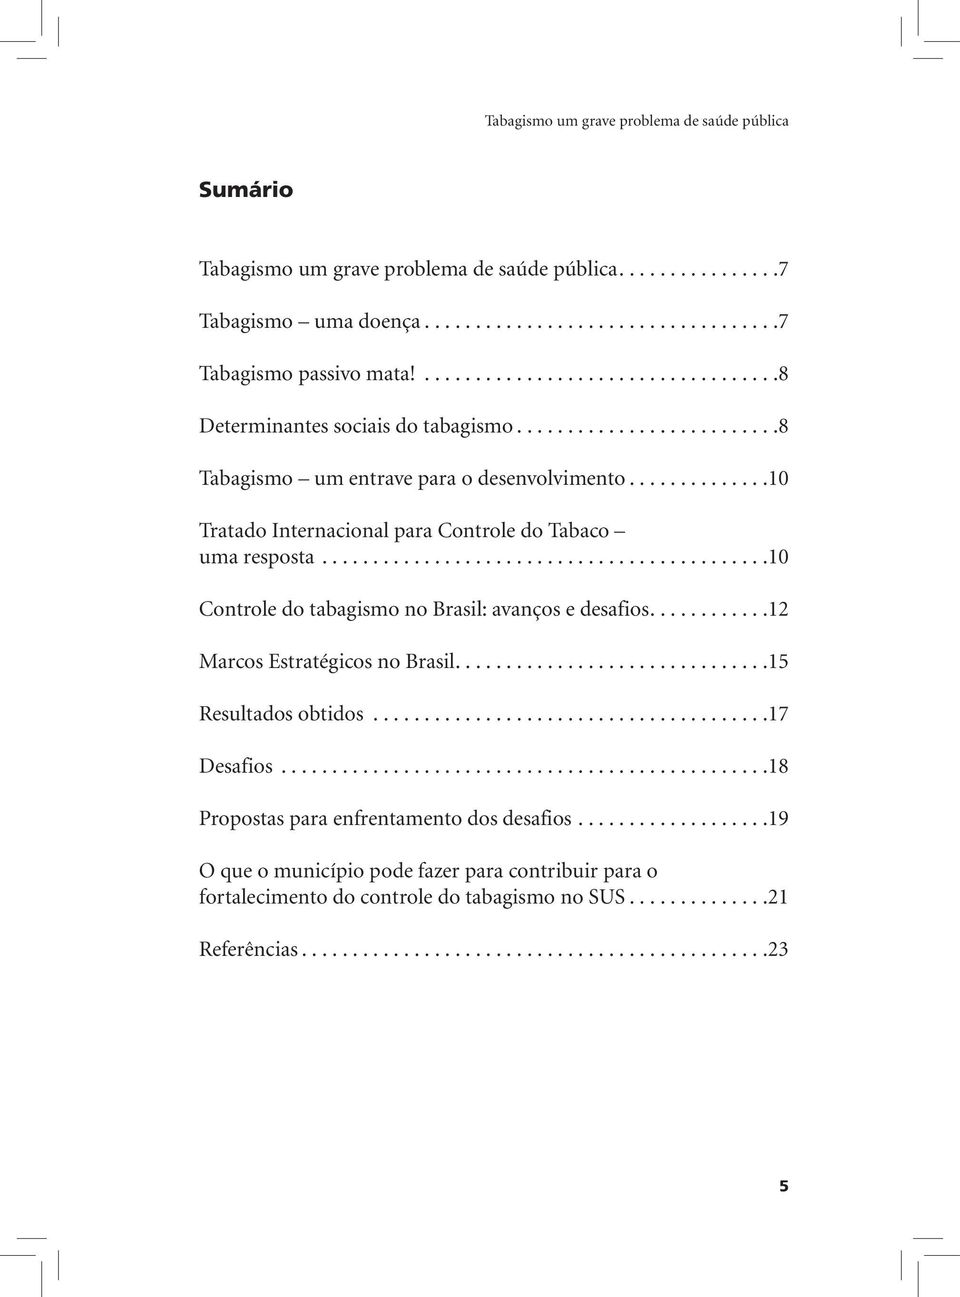 .............10 Tratado Internacional para Controle do Tabaco uma resposta............................................10 Controle do tabagismo no Brasil: avanços e desafios.